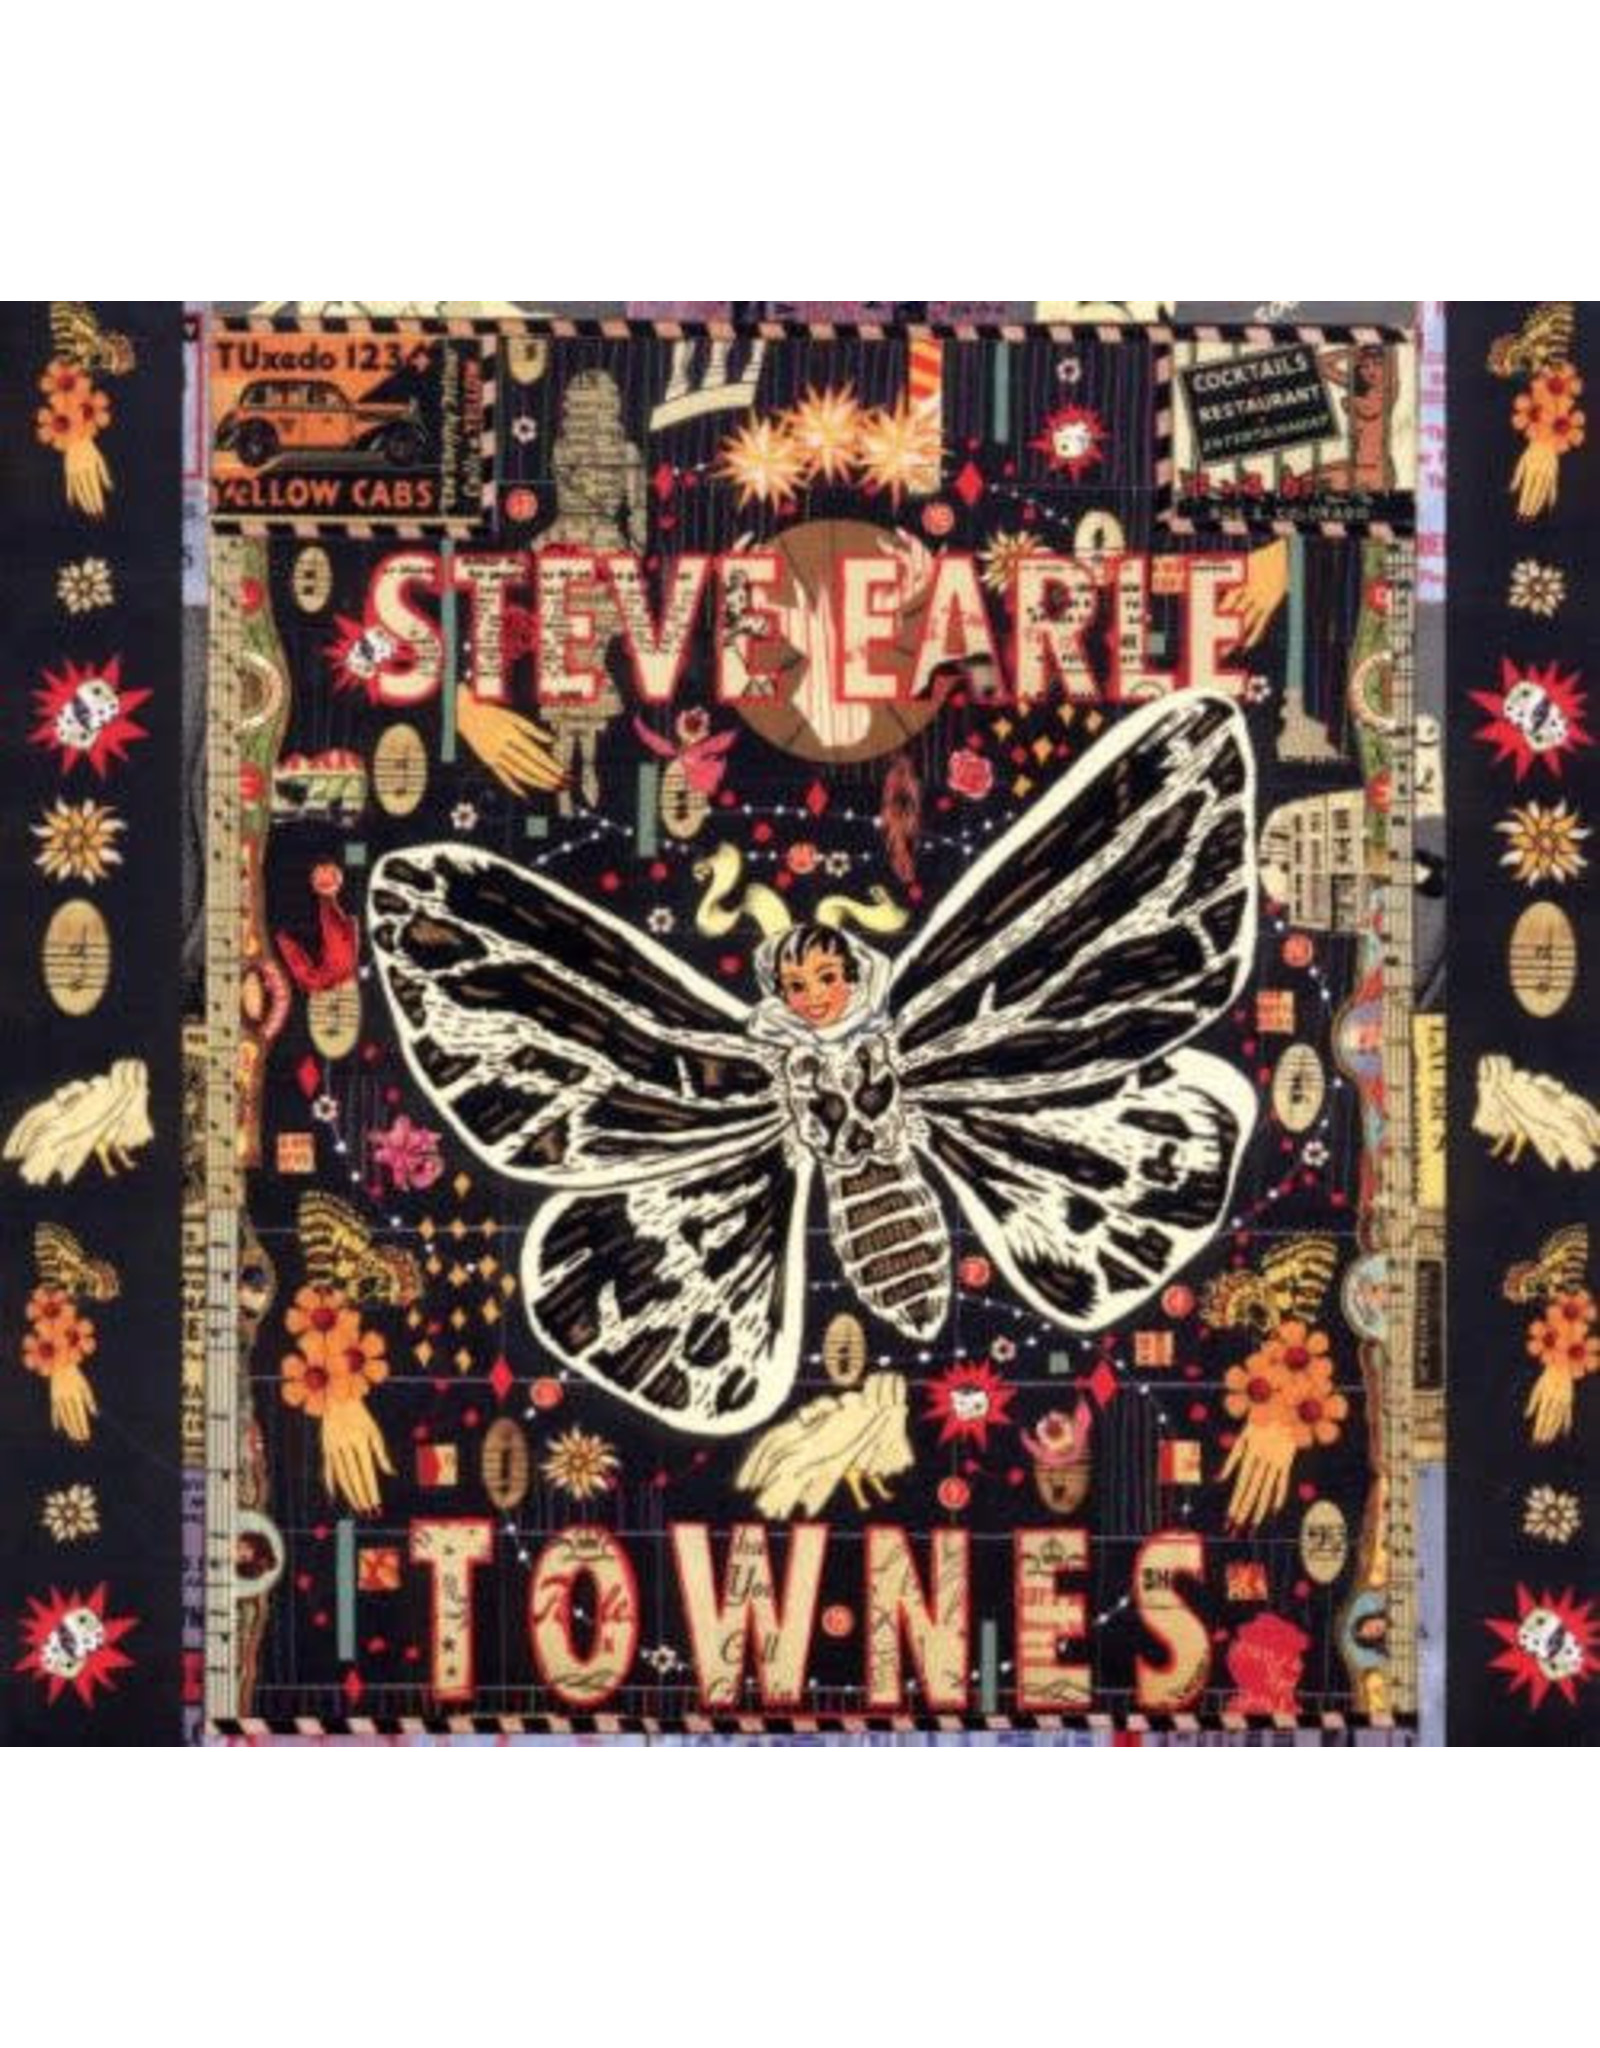 New West Earle, Steve: Townes (2LP; Clear Color Vinyl) LP